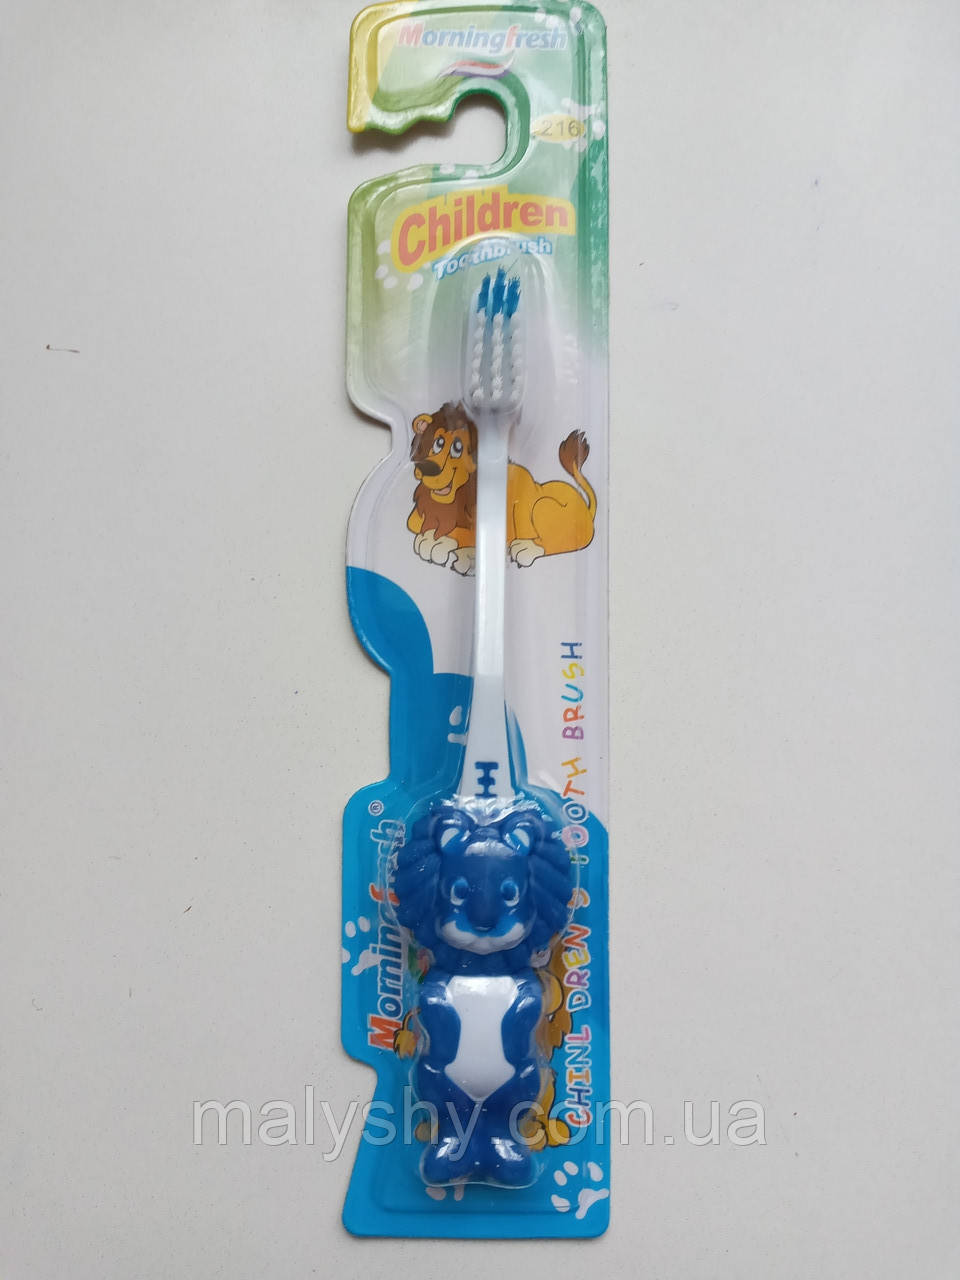 Дитяча зубна щітка «Morningfresh» 14,5 см ЛЕВ, від 3-х років СИНЯ